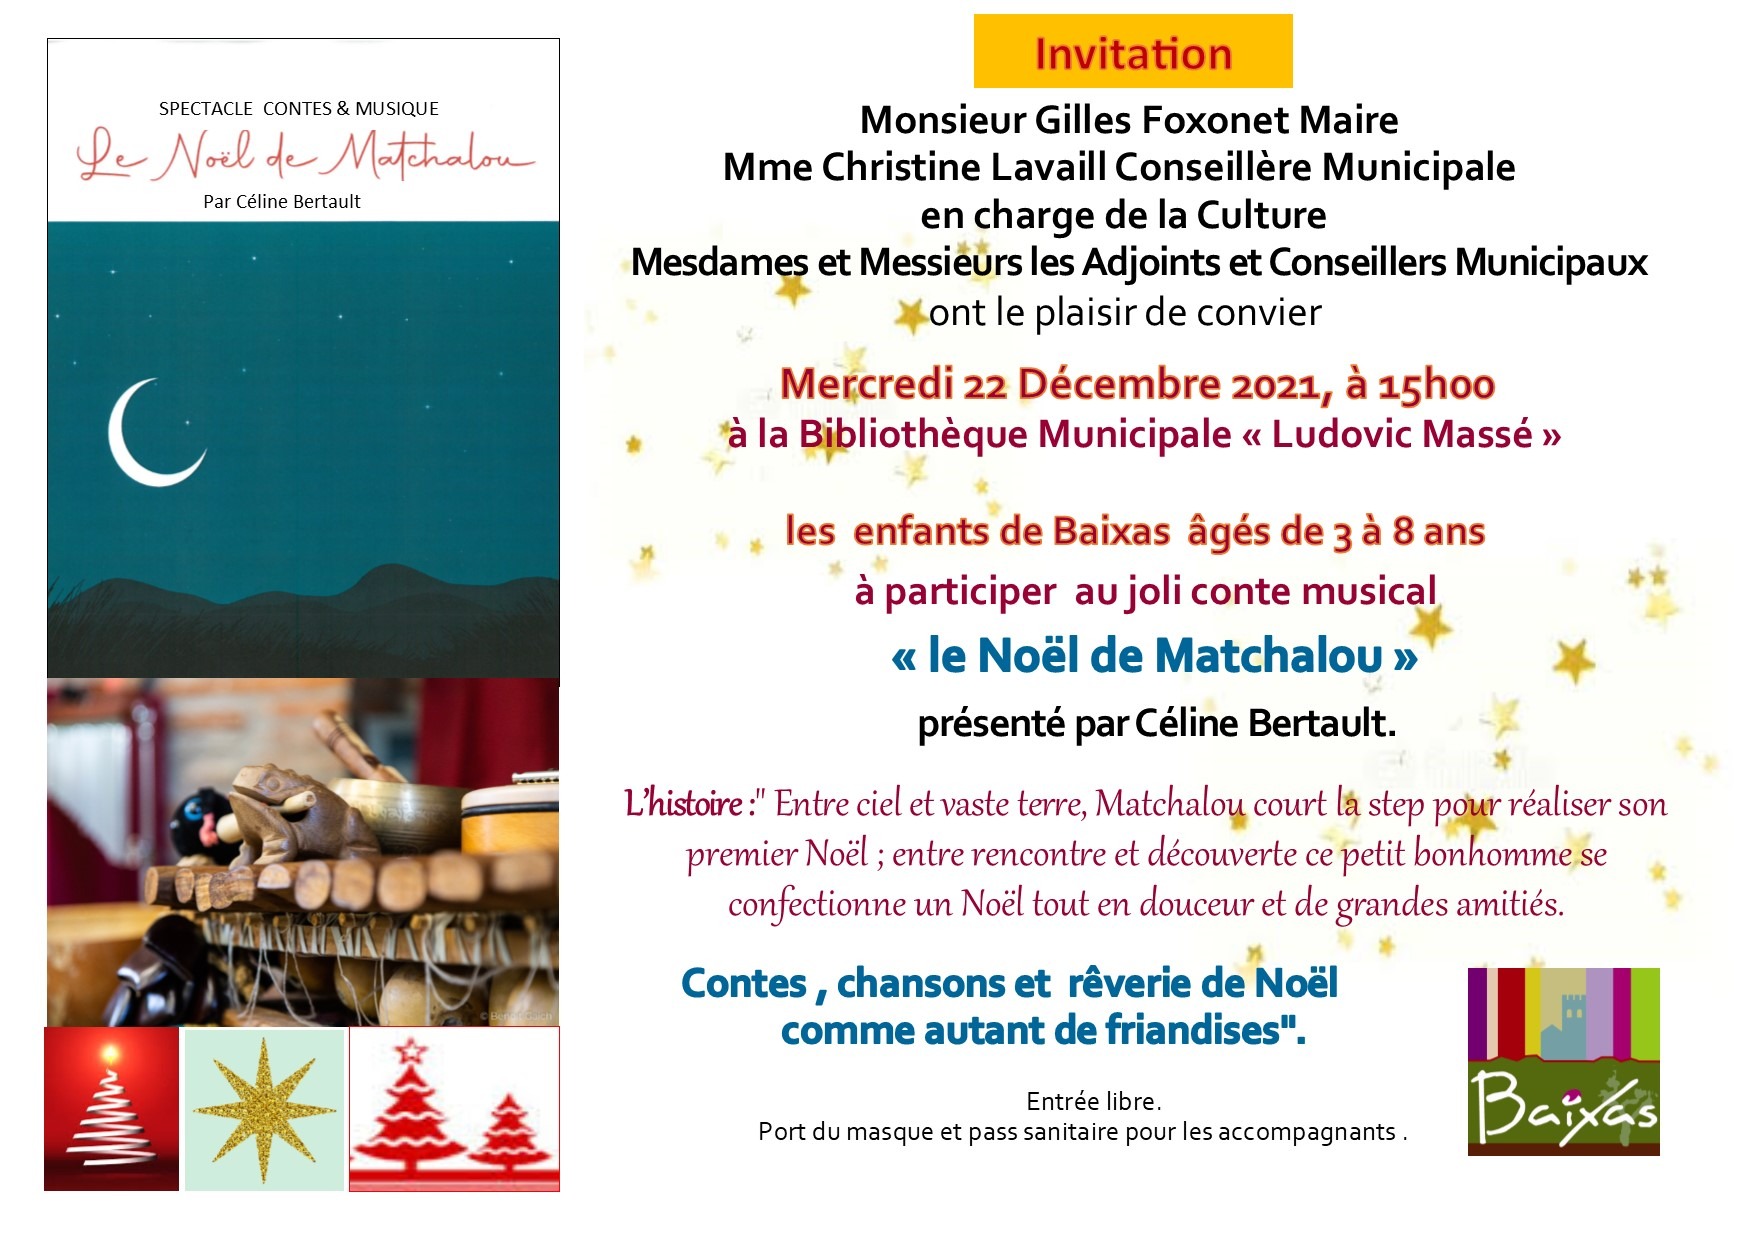 Conte Musical "Le Noël de Matchalou"